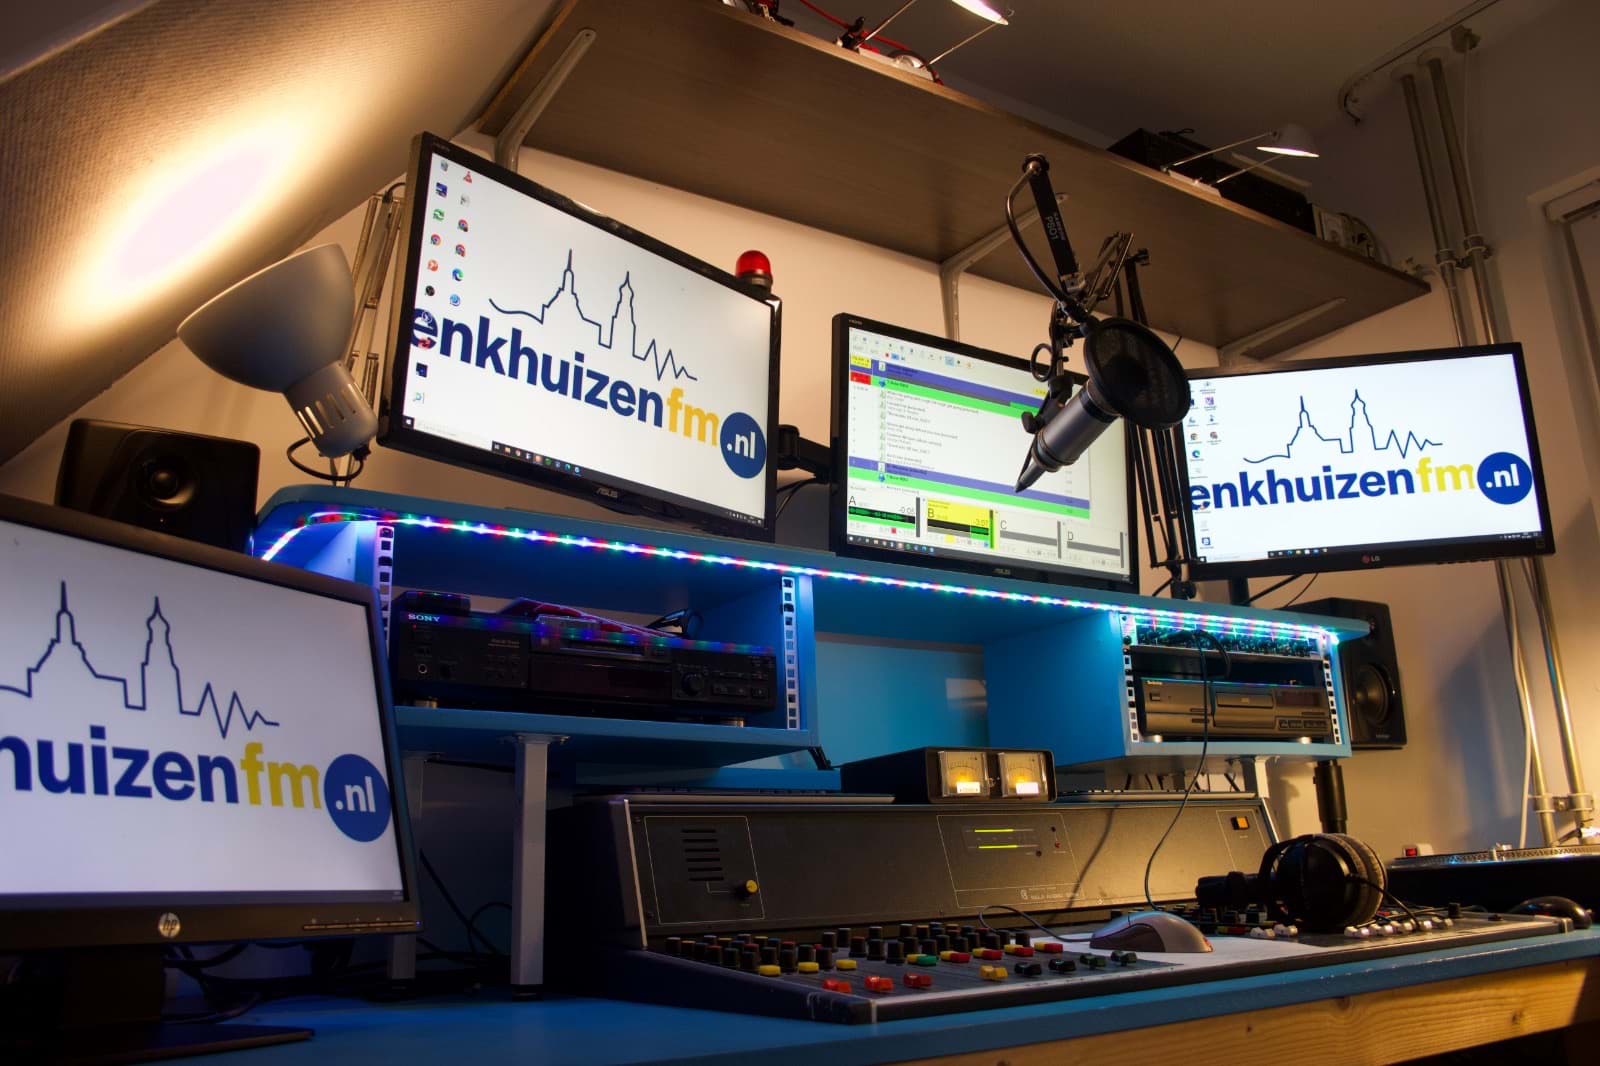 De studio's van Enkhuizen FM bevinden zich op verschillende locatie's